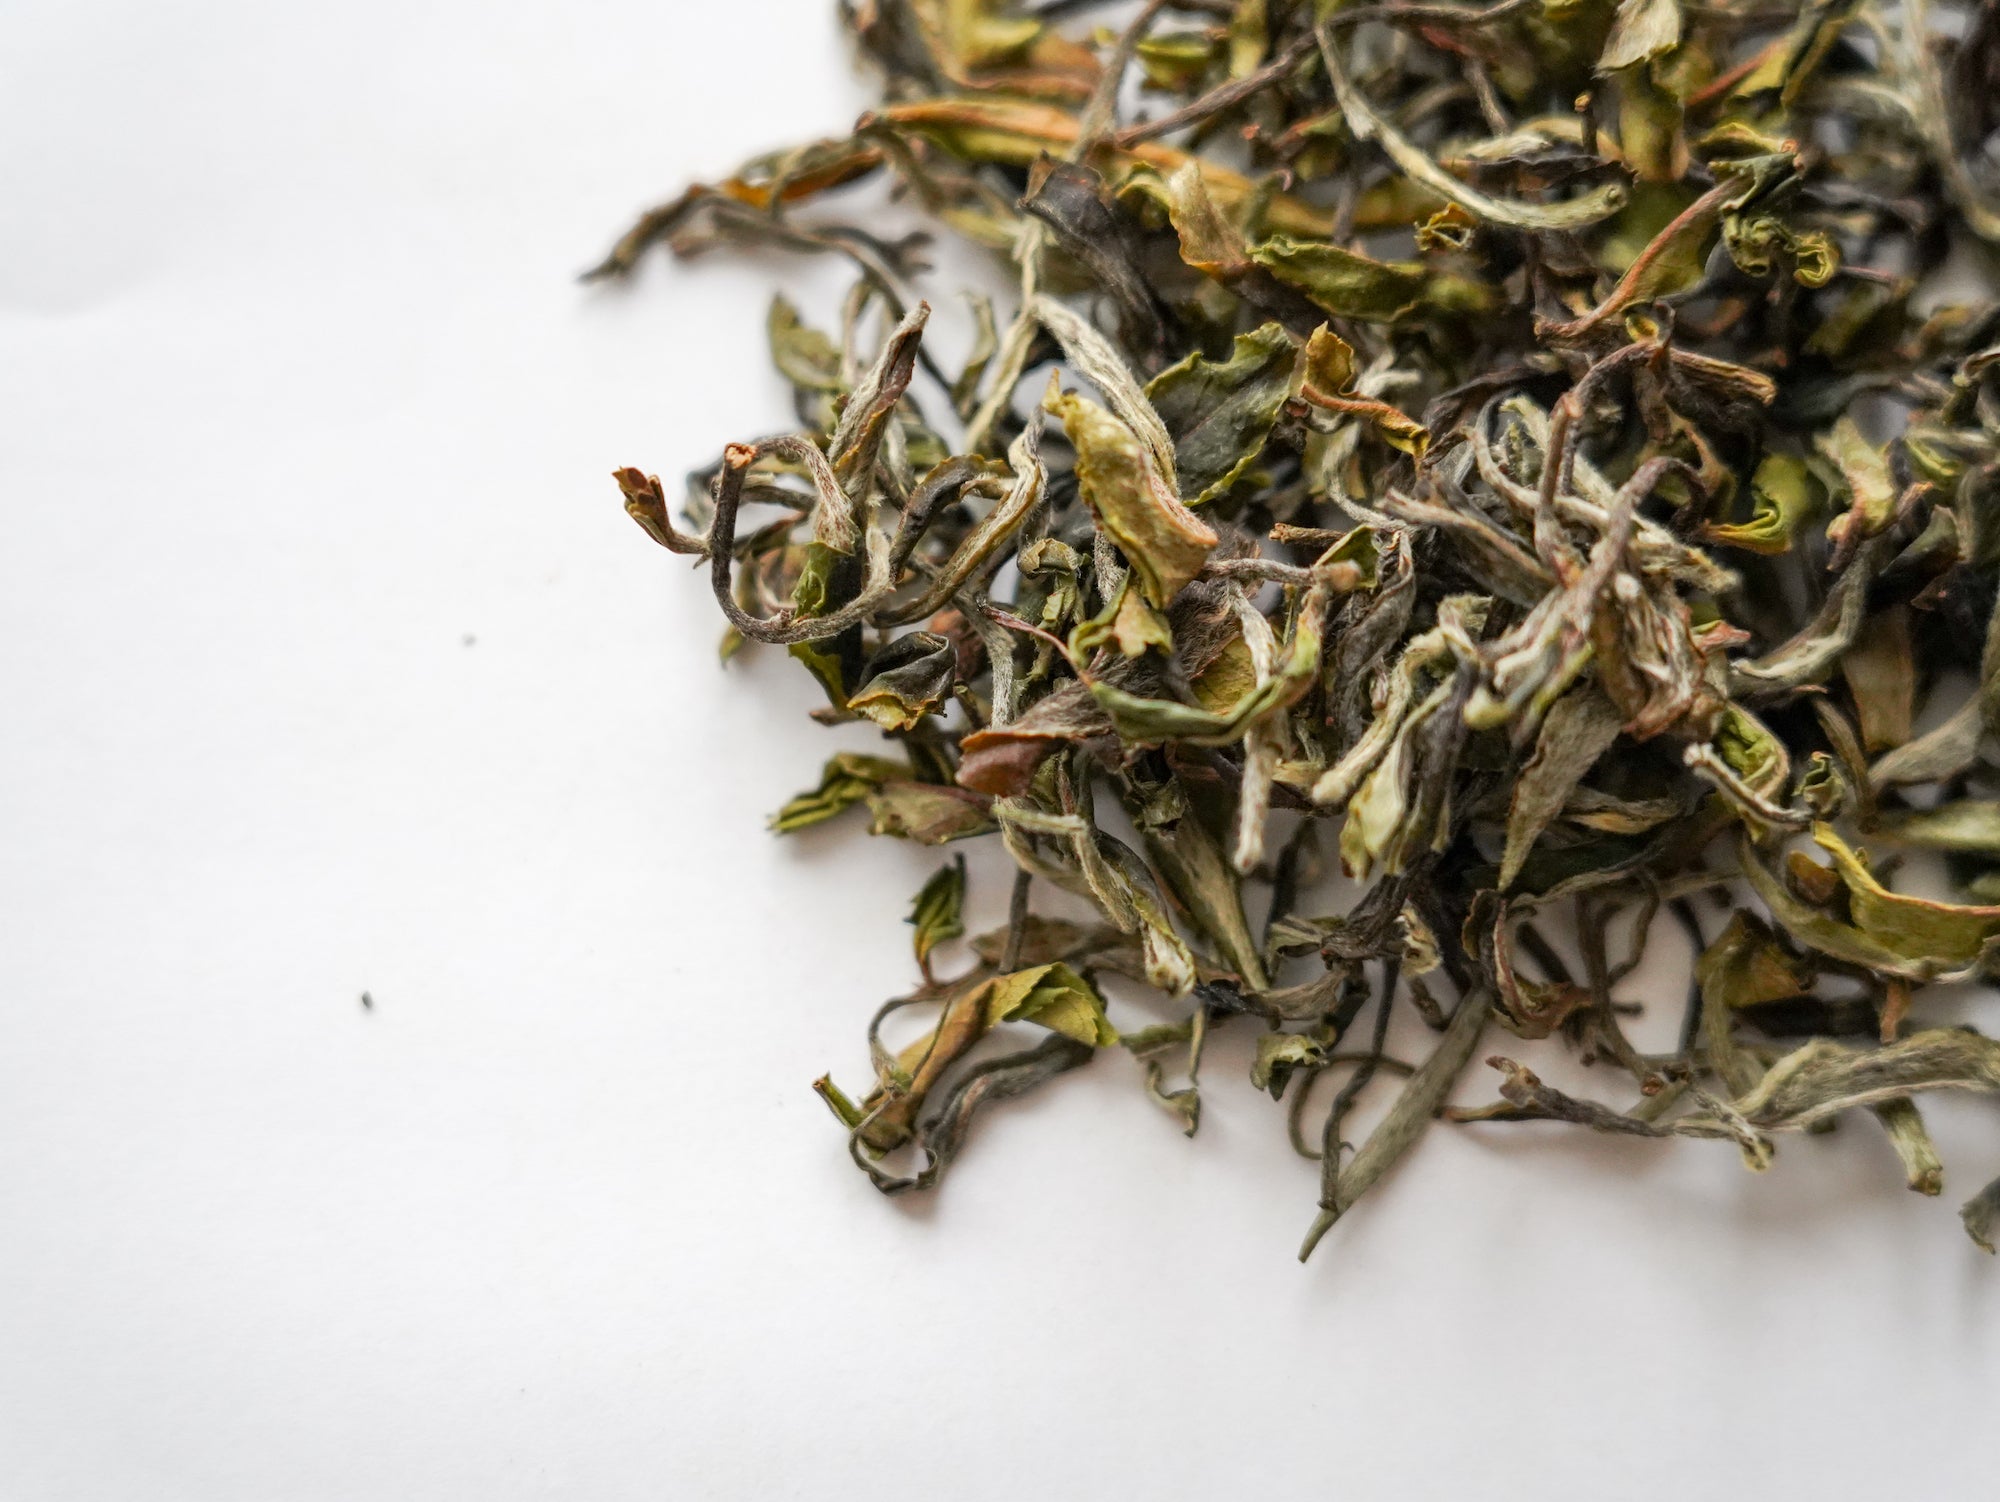 【2022年】 春摘み紅茶 -CLASSIC TEA- (茶葉 45g)